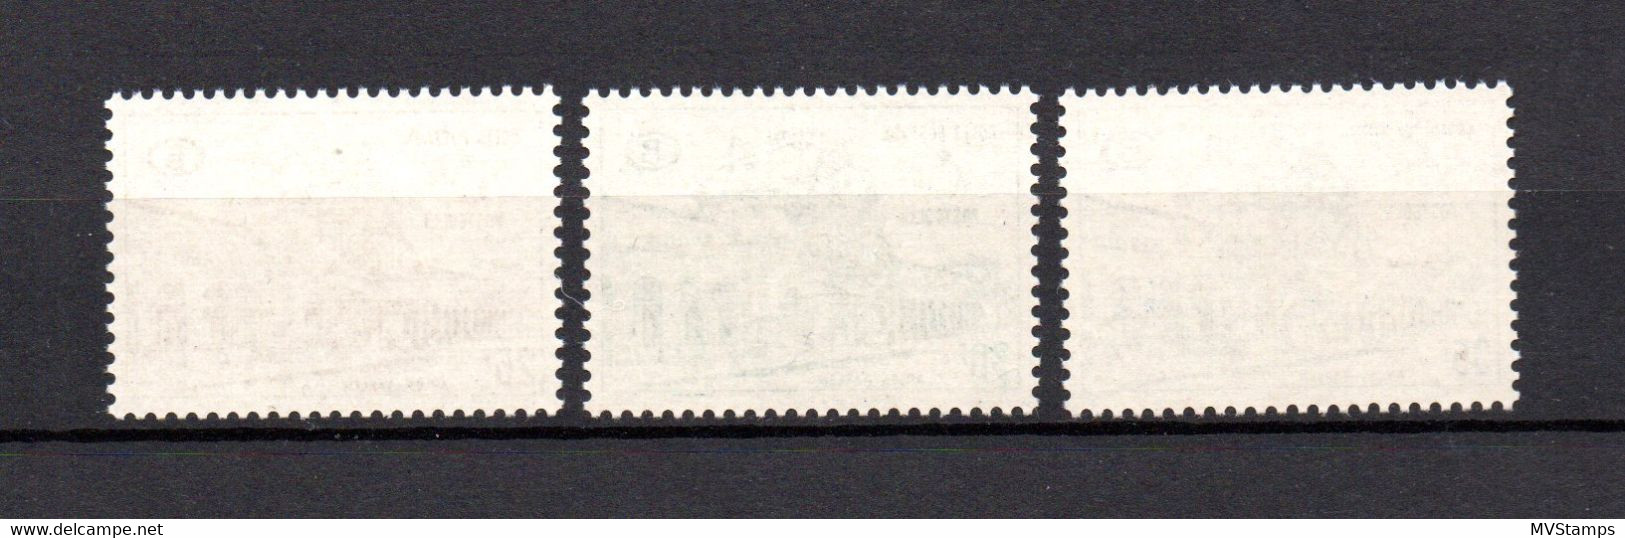 Belgium 1967 Set Parcel-stamps (Michel PP 60/62) Nice MNH - Reisgoedzegels [BA]